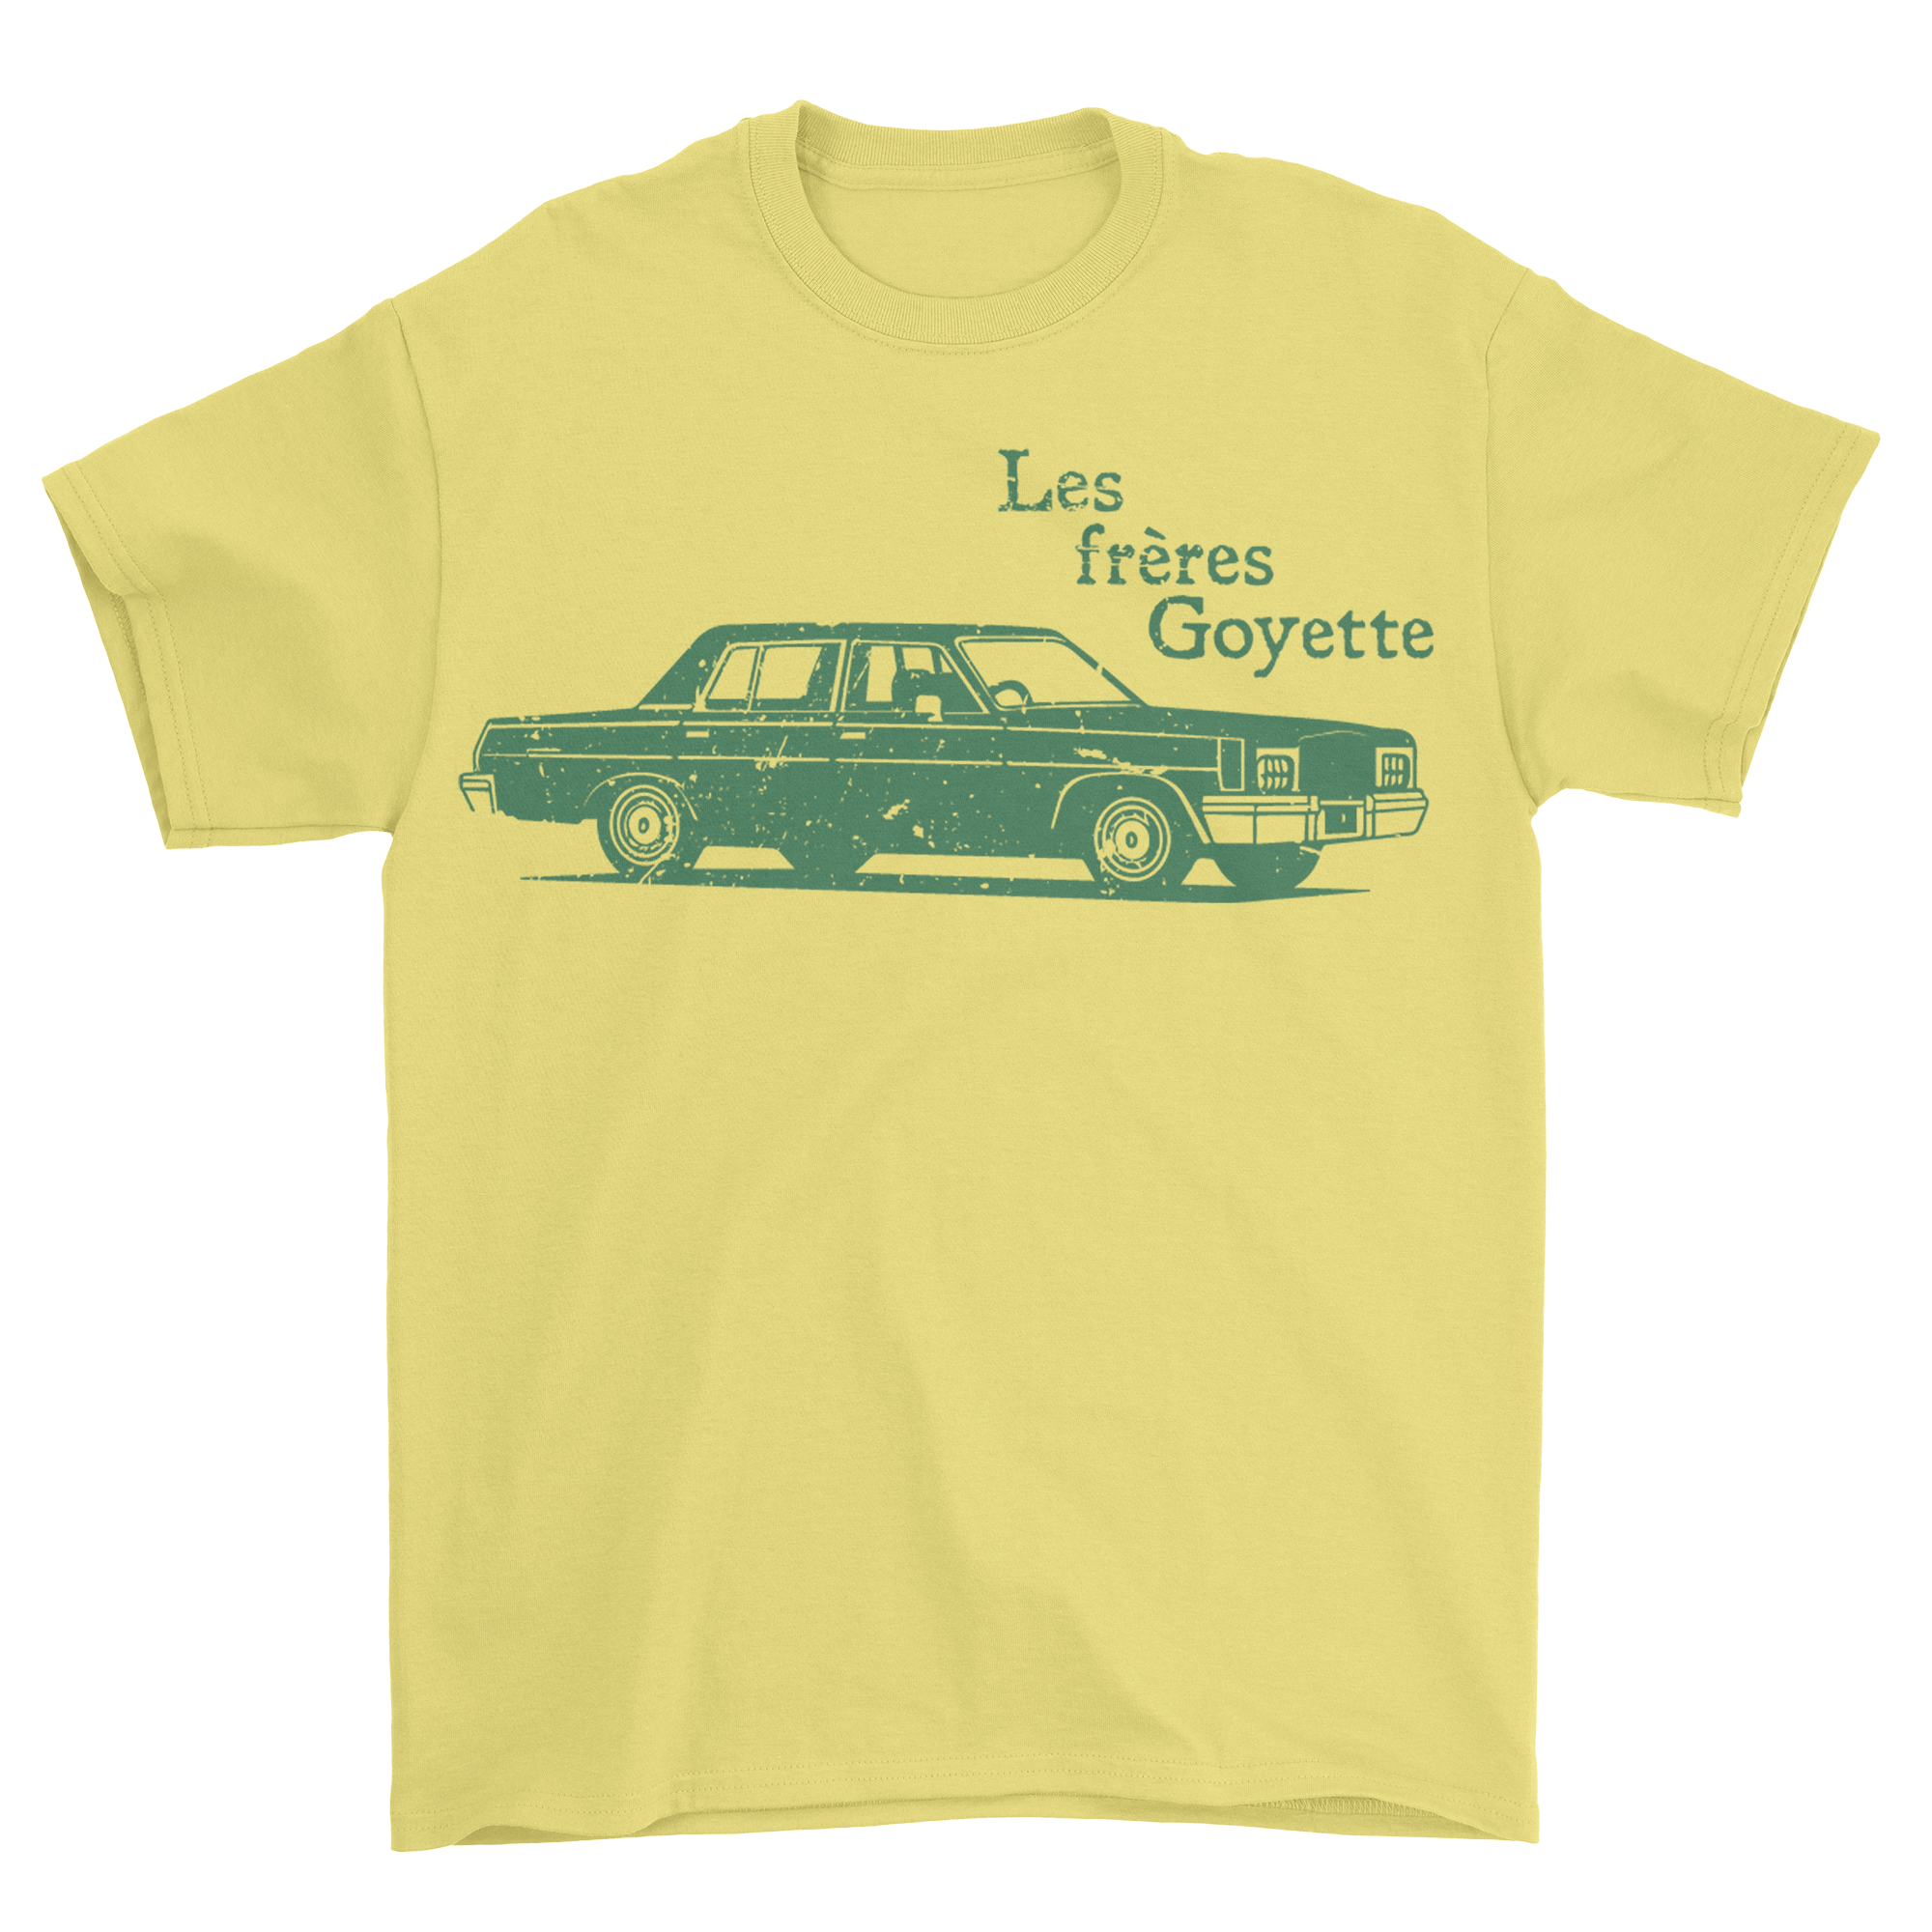 Les frères Goyette - T-shirt jaune «Les frères Goyette»